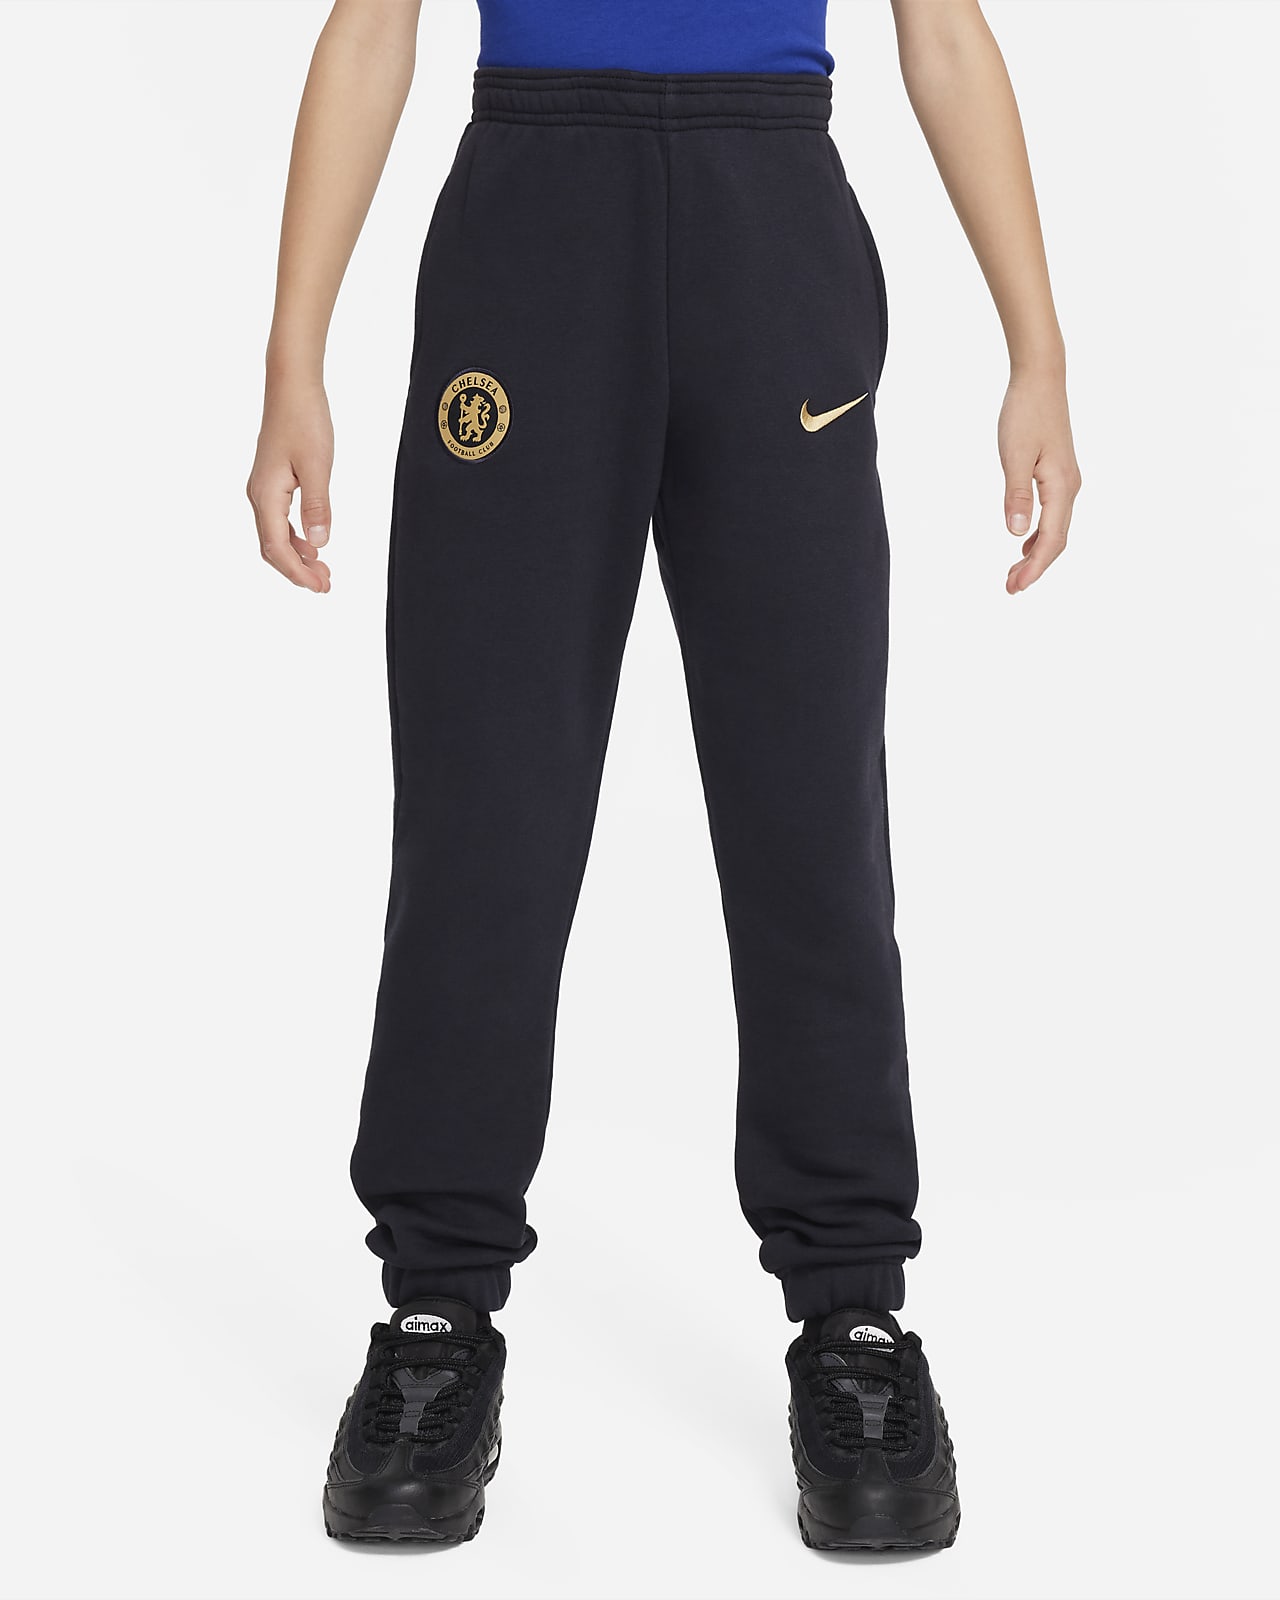 Chelsea FC Big Kids' Nike Fleece Pants